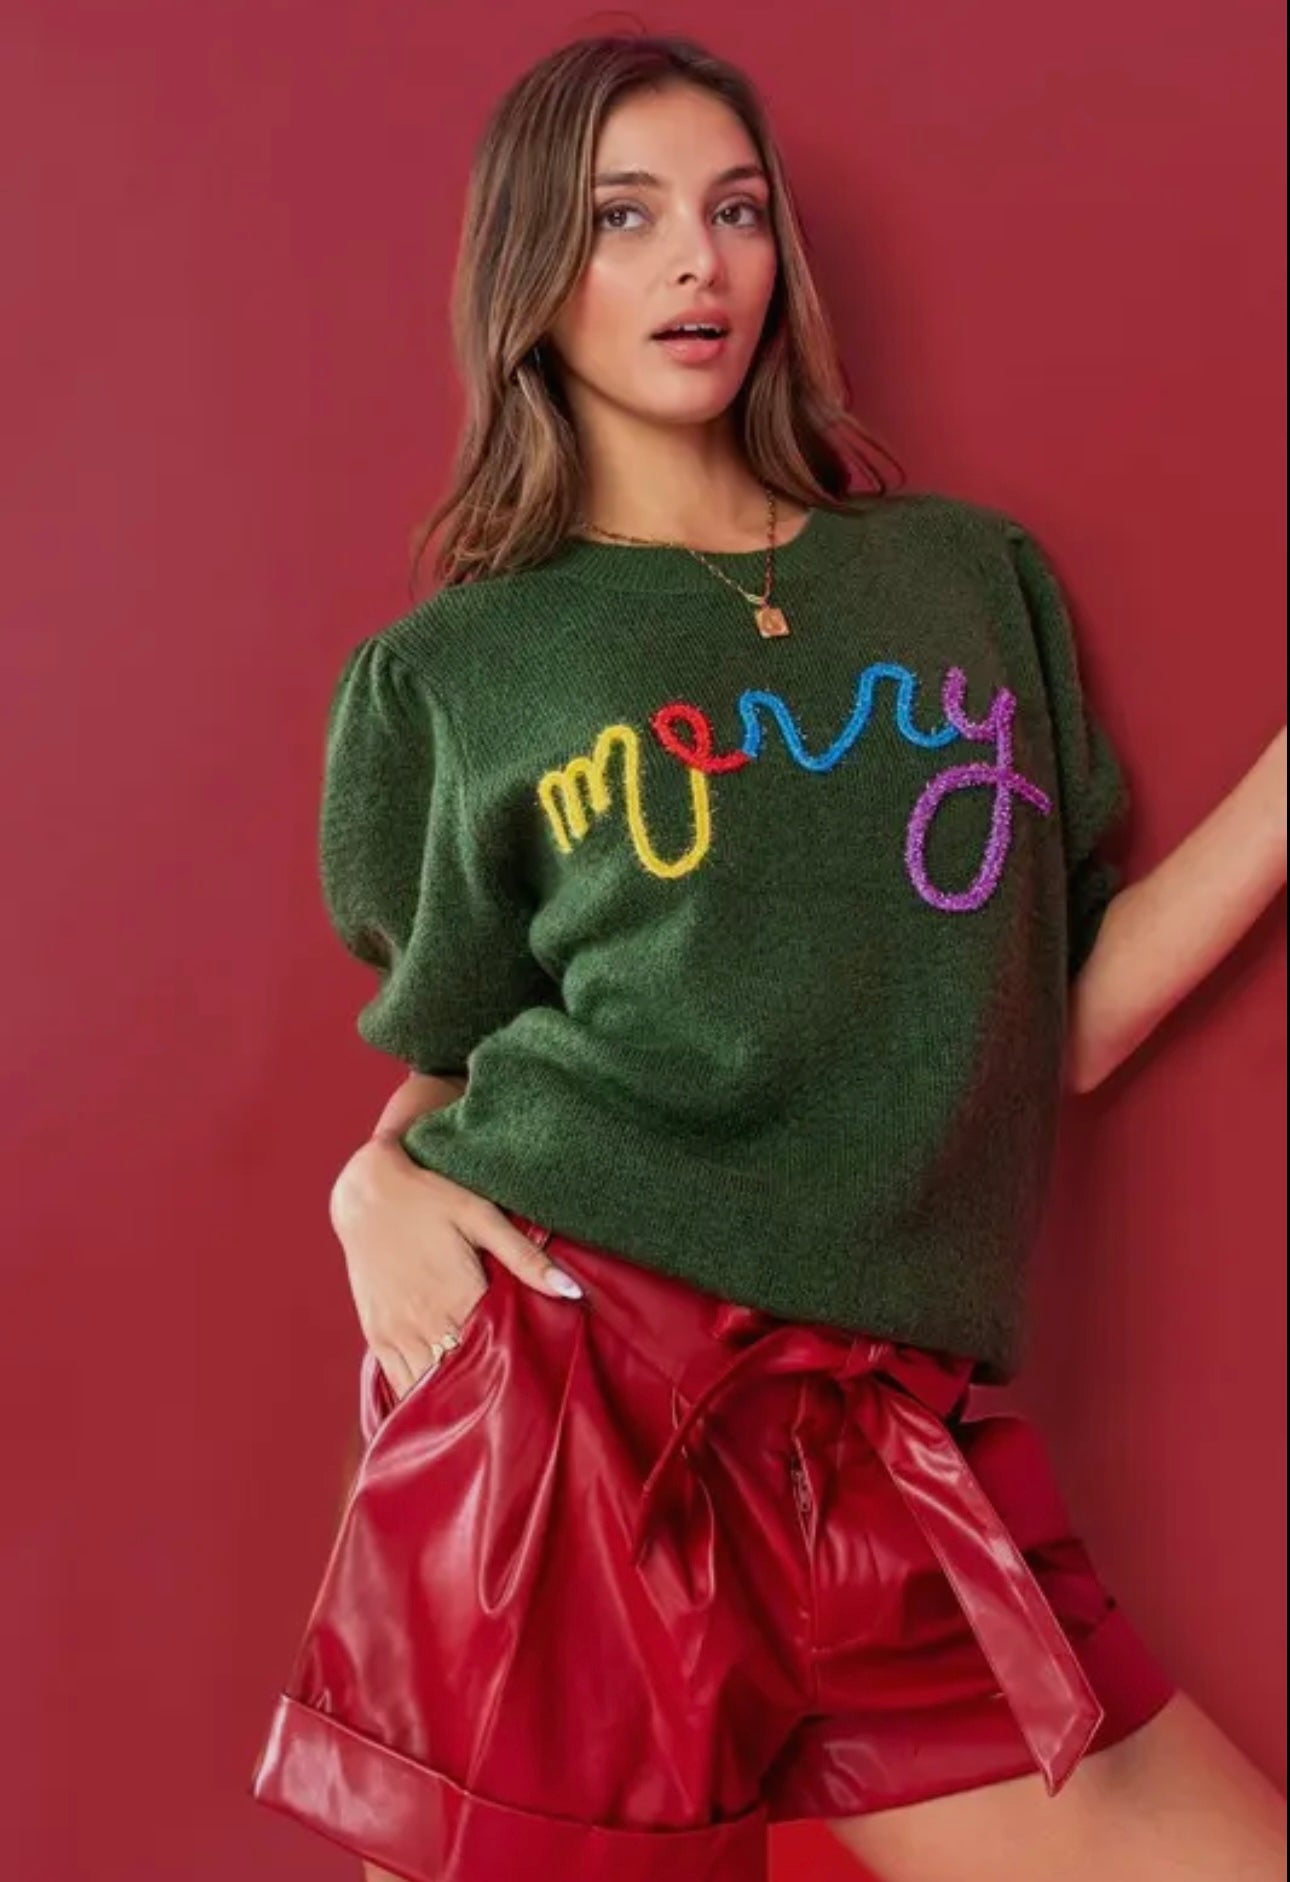 Women’s “Merry” Sweater